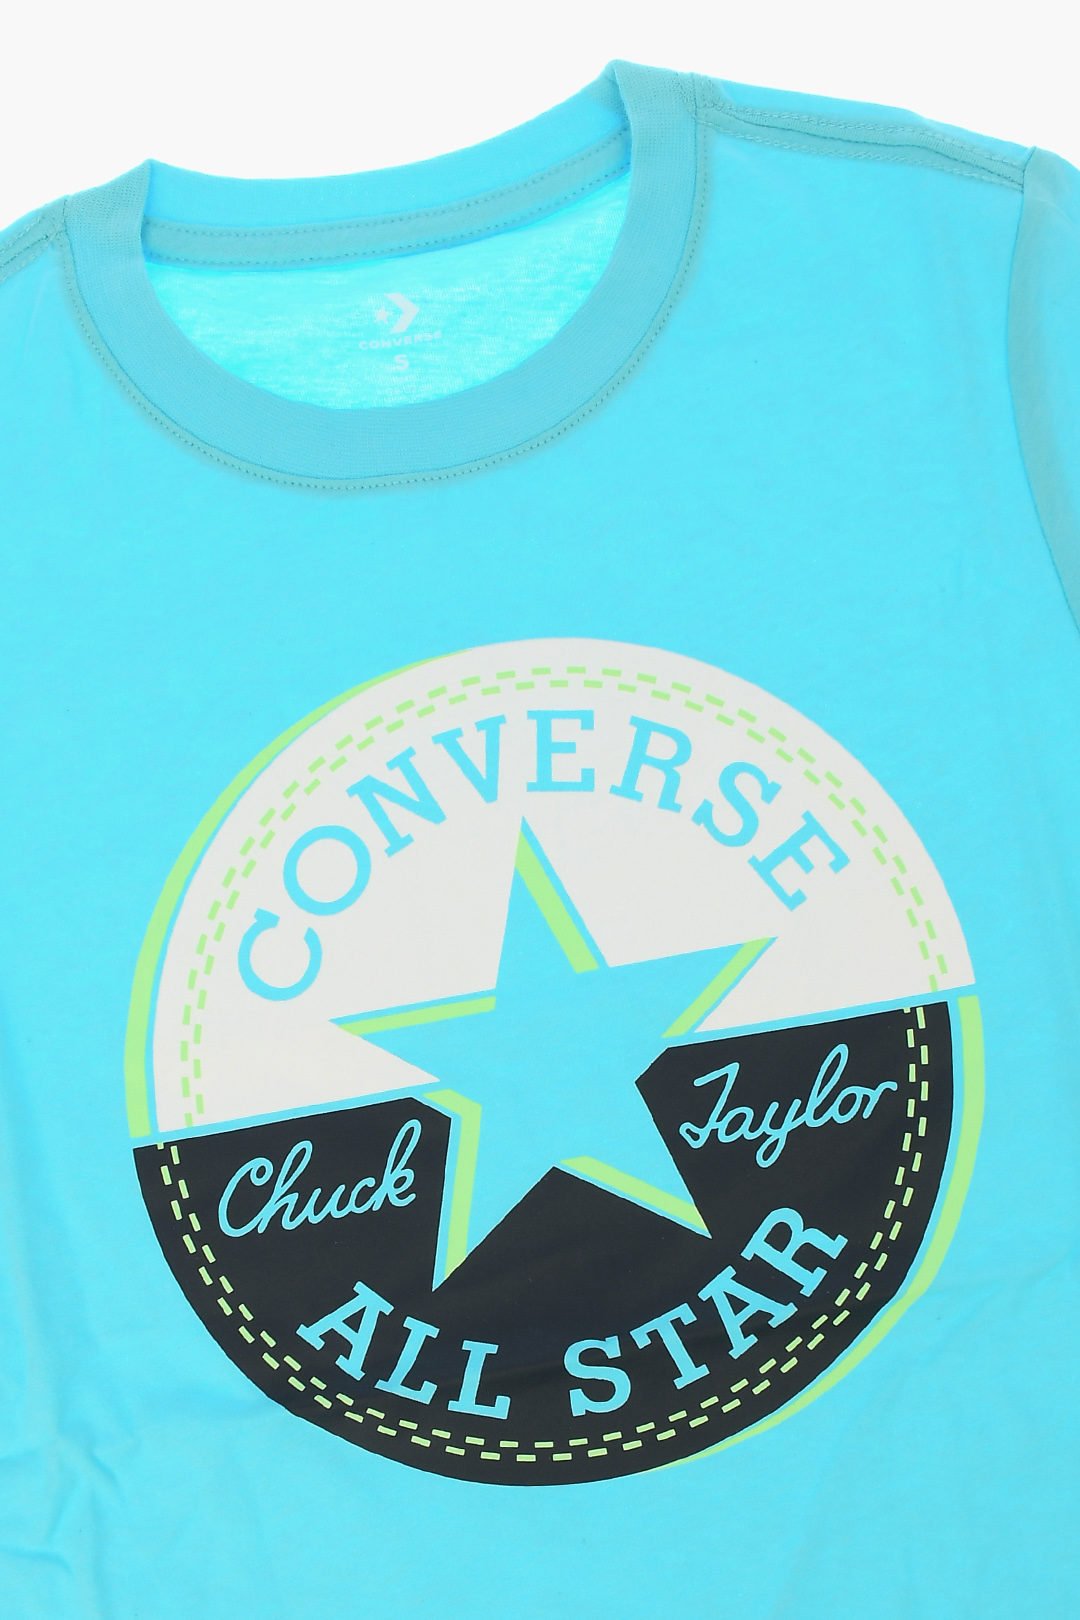 converse t shirt kids